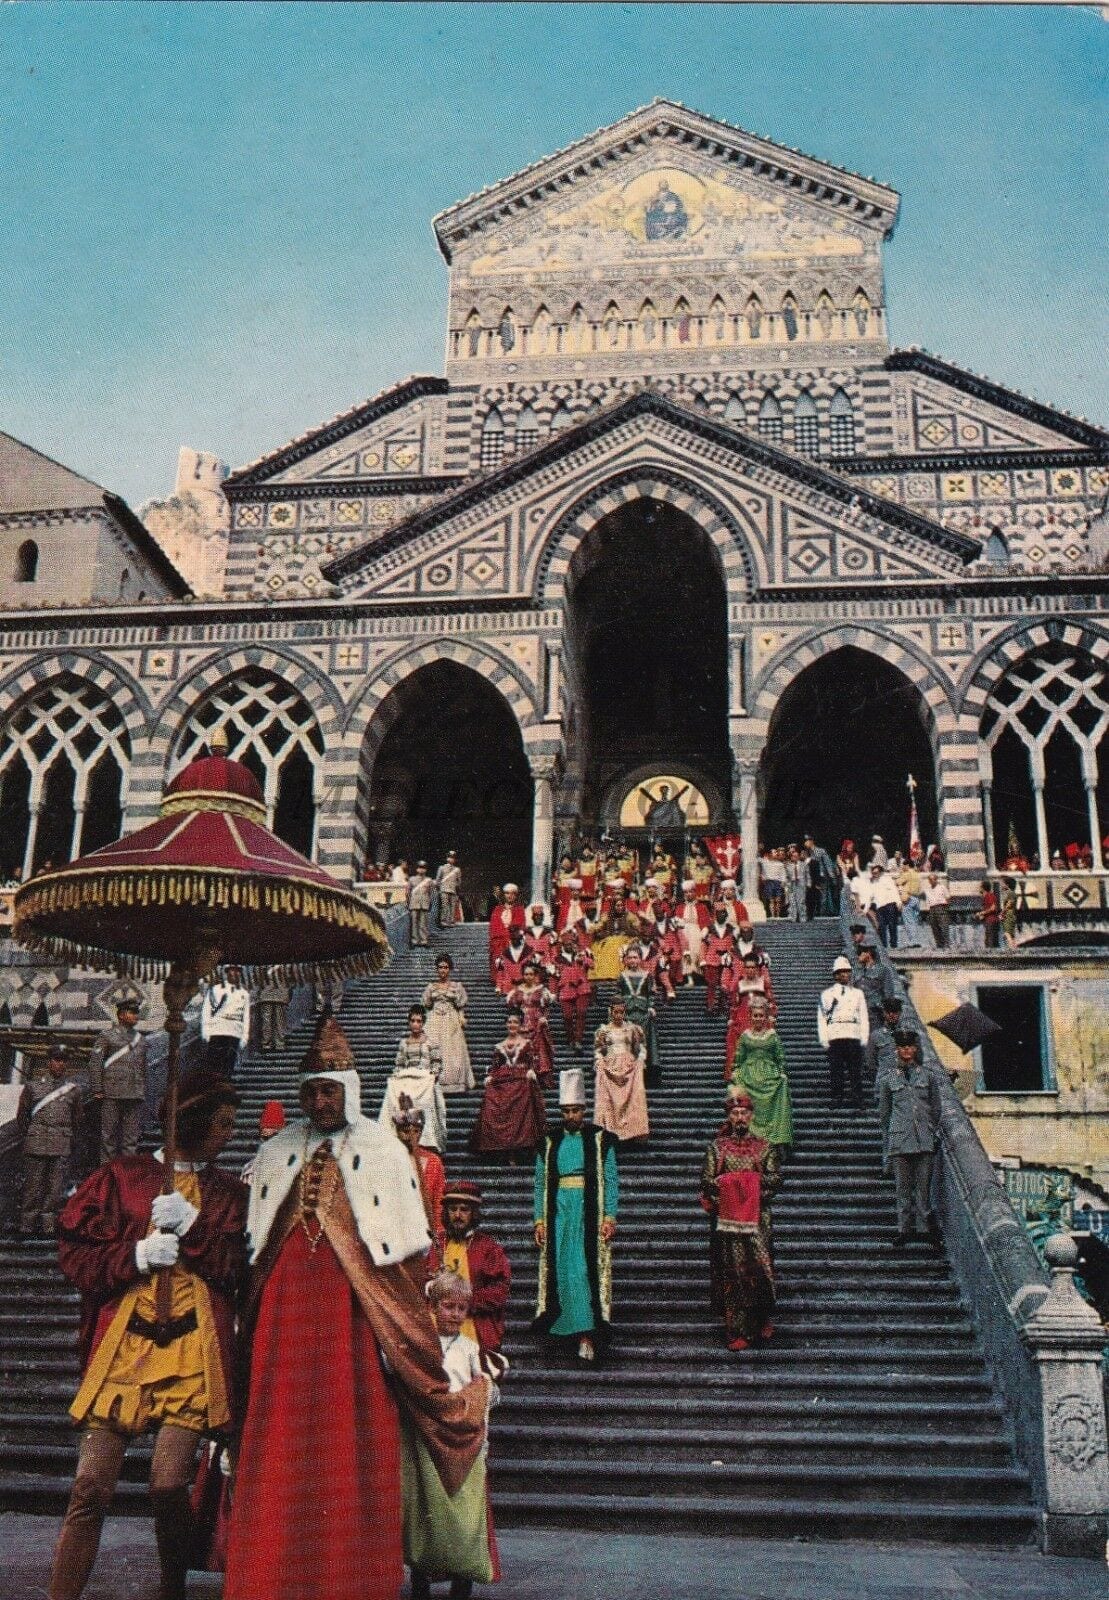 В описании к открытке значится, что это очередная историческая регата. Та самая, что раз в четыре года проводится между Пизей, Генуей, Венецией и Амальфи. Хотя по нарядам это больше похоже на празднование византийского нового года.